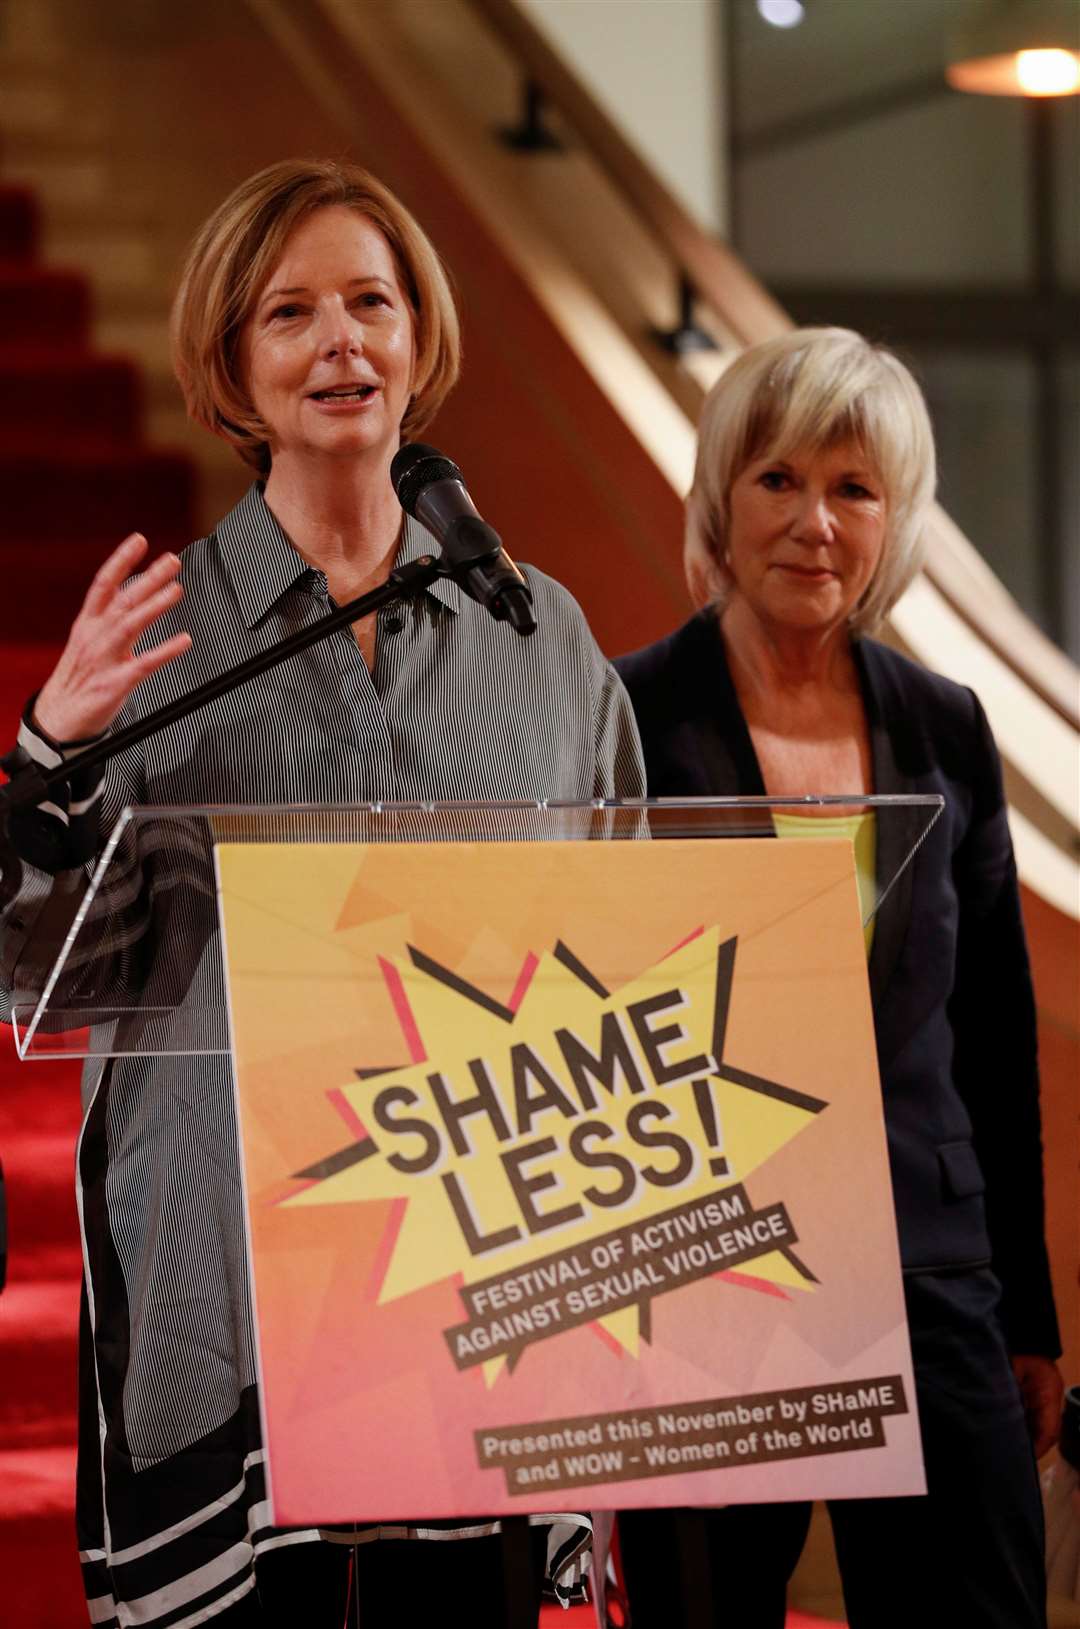 Julia Gillard (left) speaks as Jude Kelly looks on (Peter Nichols/PA)